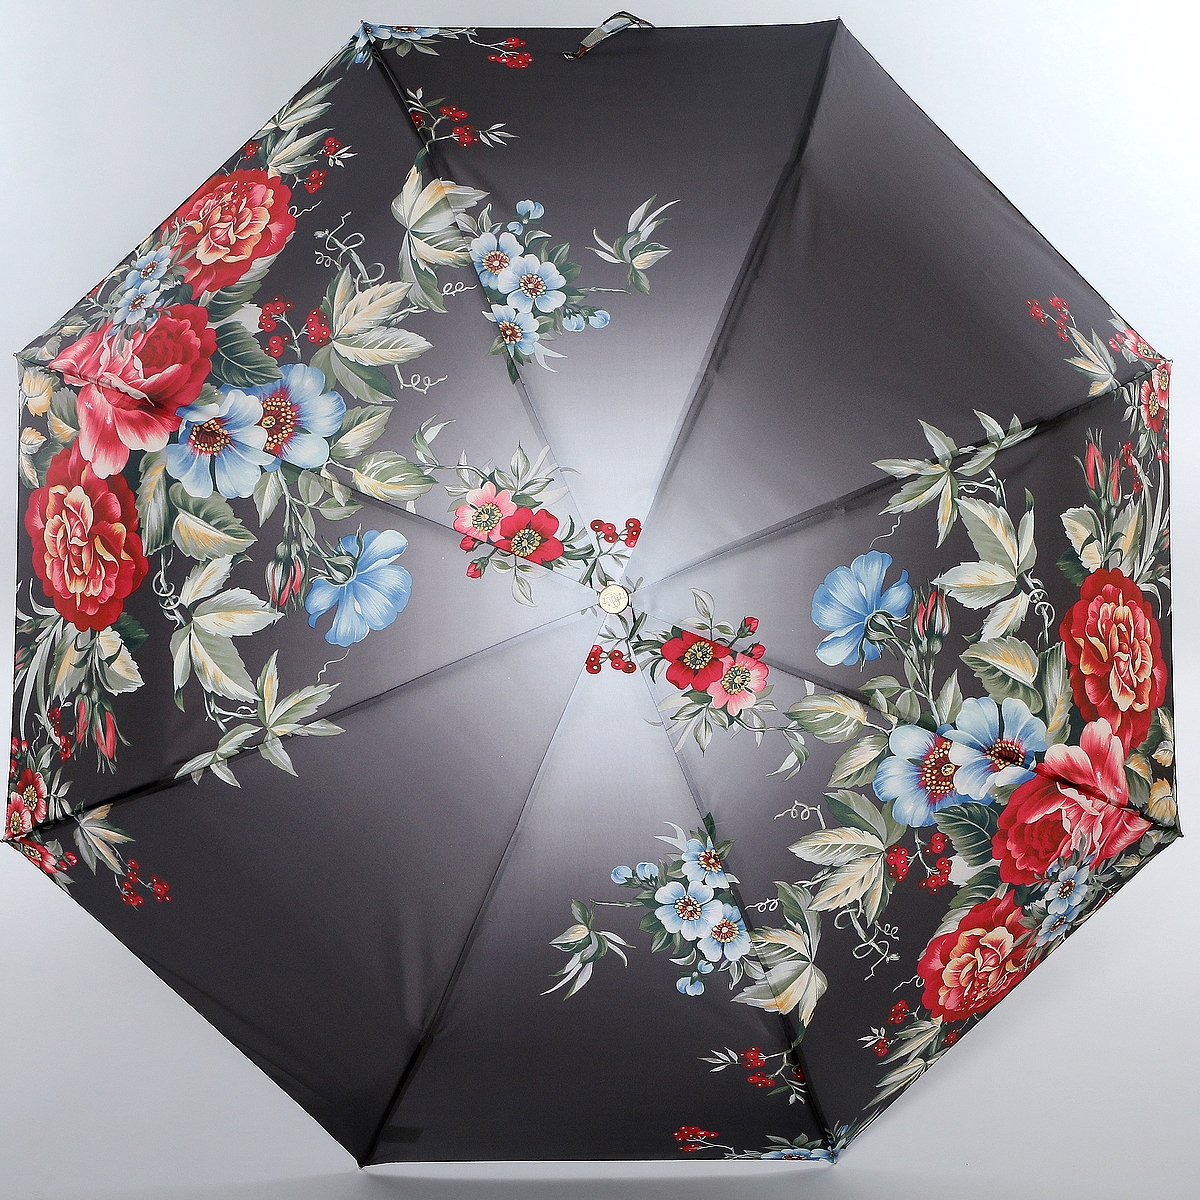 Зонт женский Trust, автомат, 3 сложения, цвет: черый, серый, красный. 31476-1639